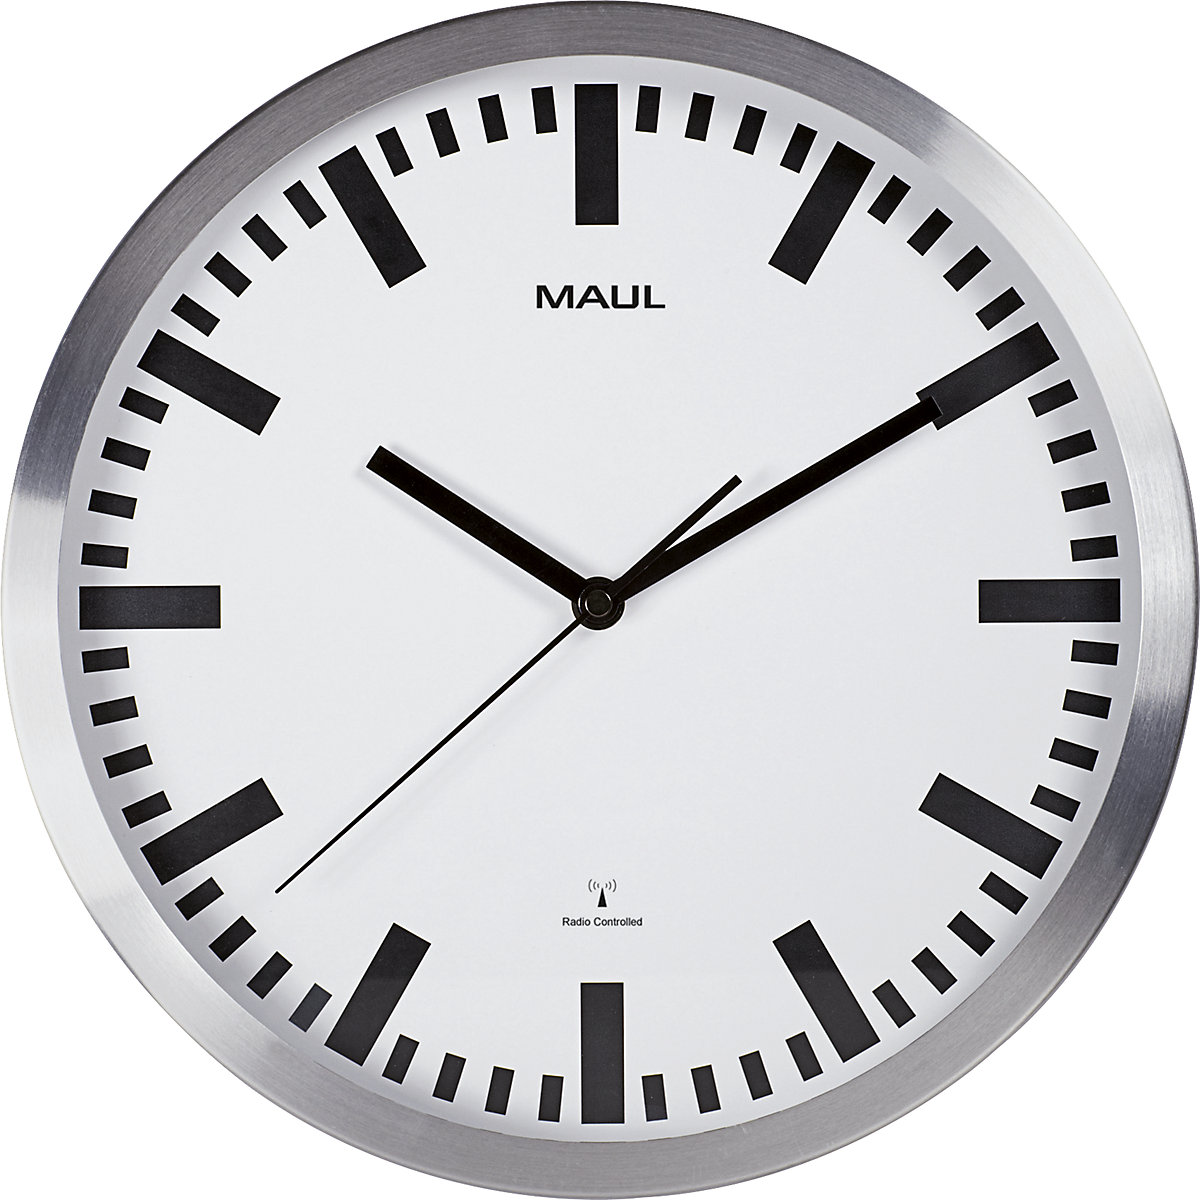 TS-DY1 horloge modulaire digitale annuelle 926749 CHRONOLUX 92674